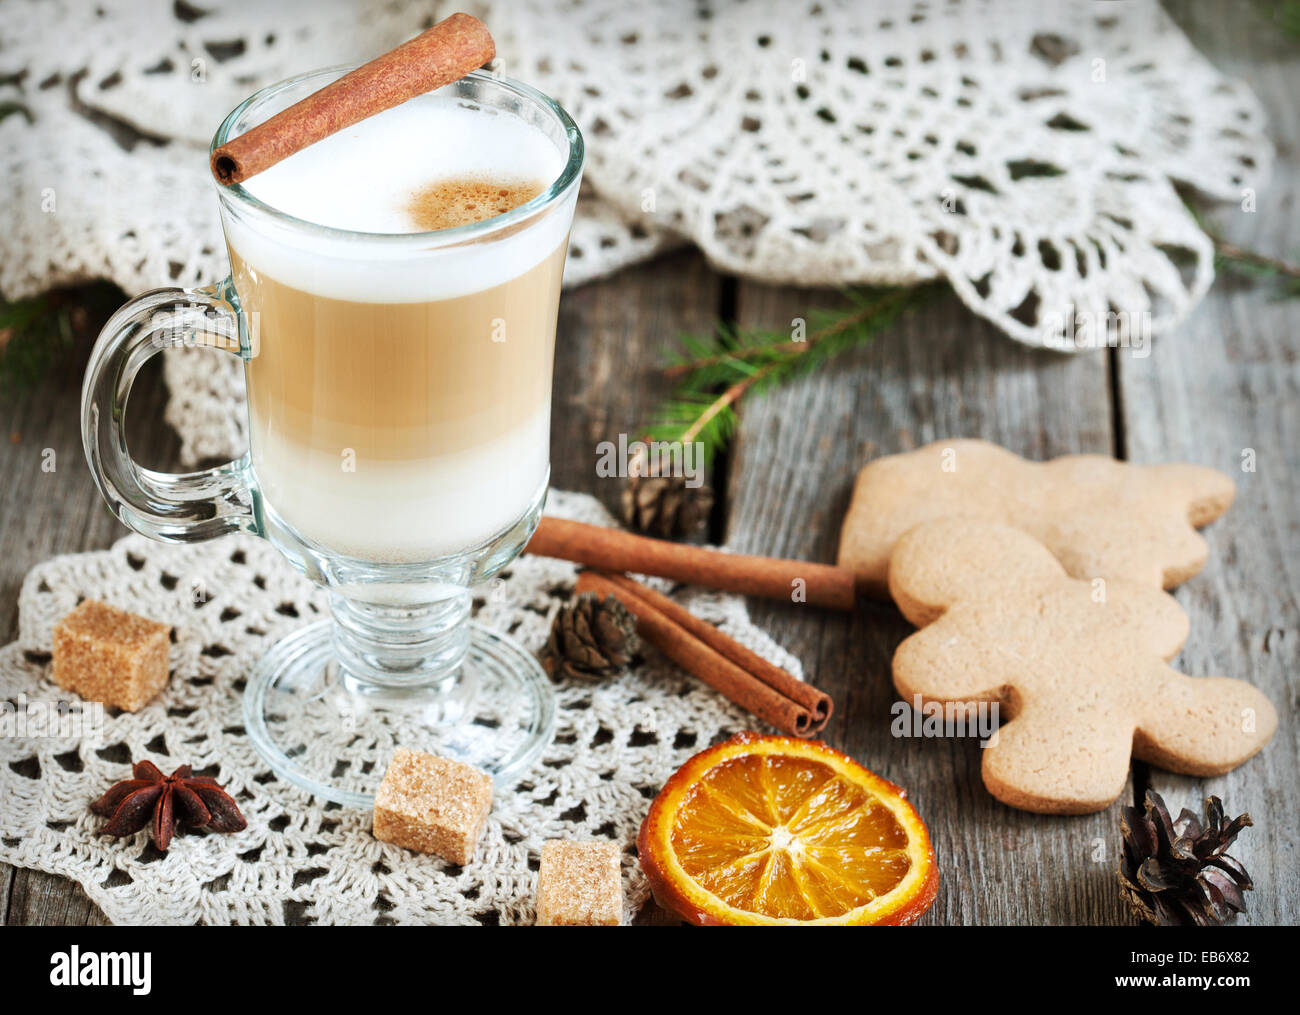 Café chaud avec du lait dans un verre sur une table en bois avec des morceaux de sucre, des bâtons de cannelle et d'orange confites tranche Banque D'Images